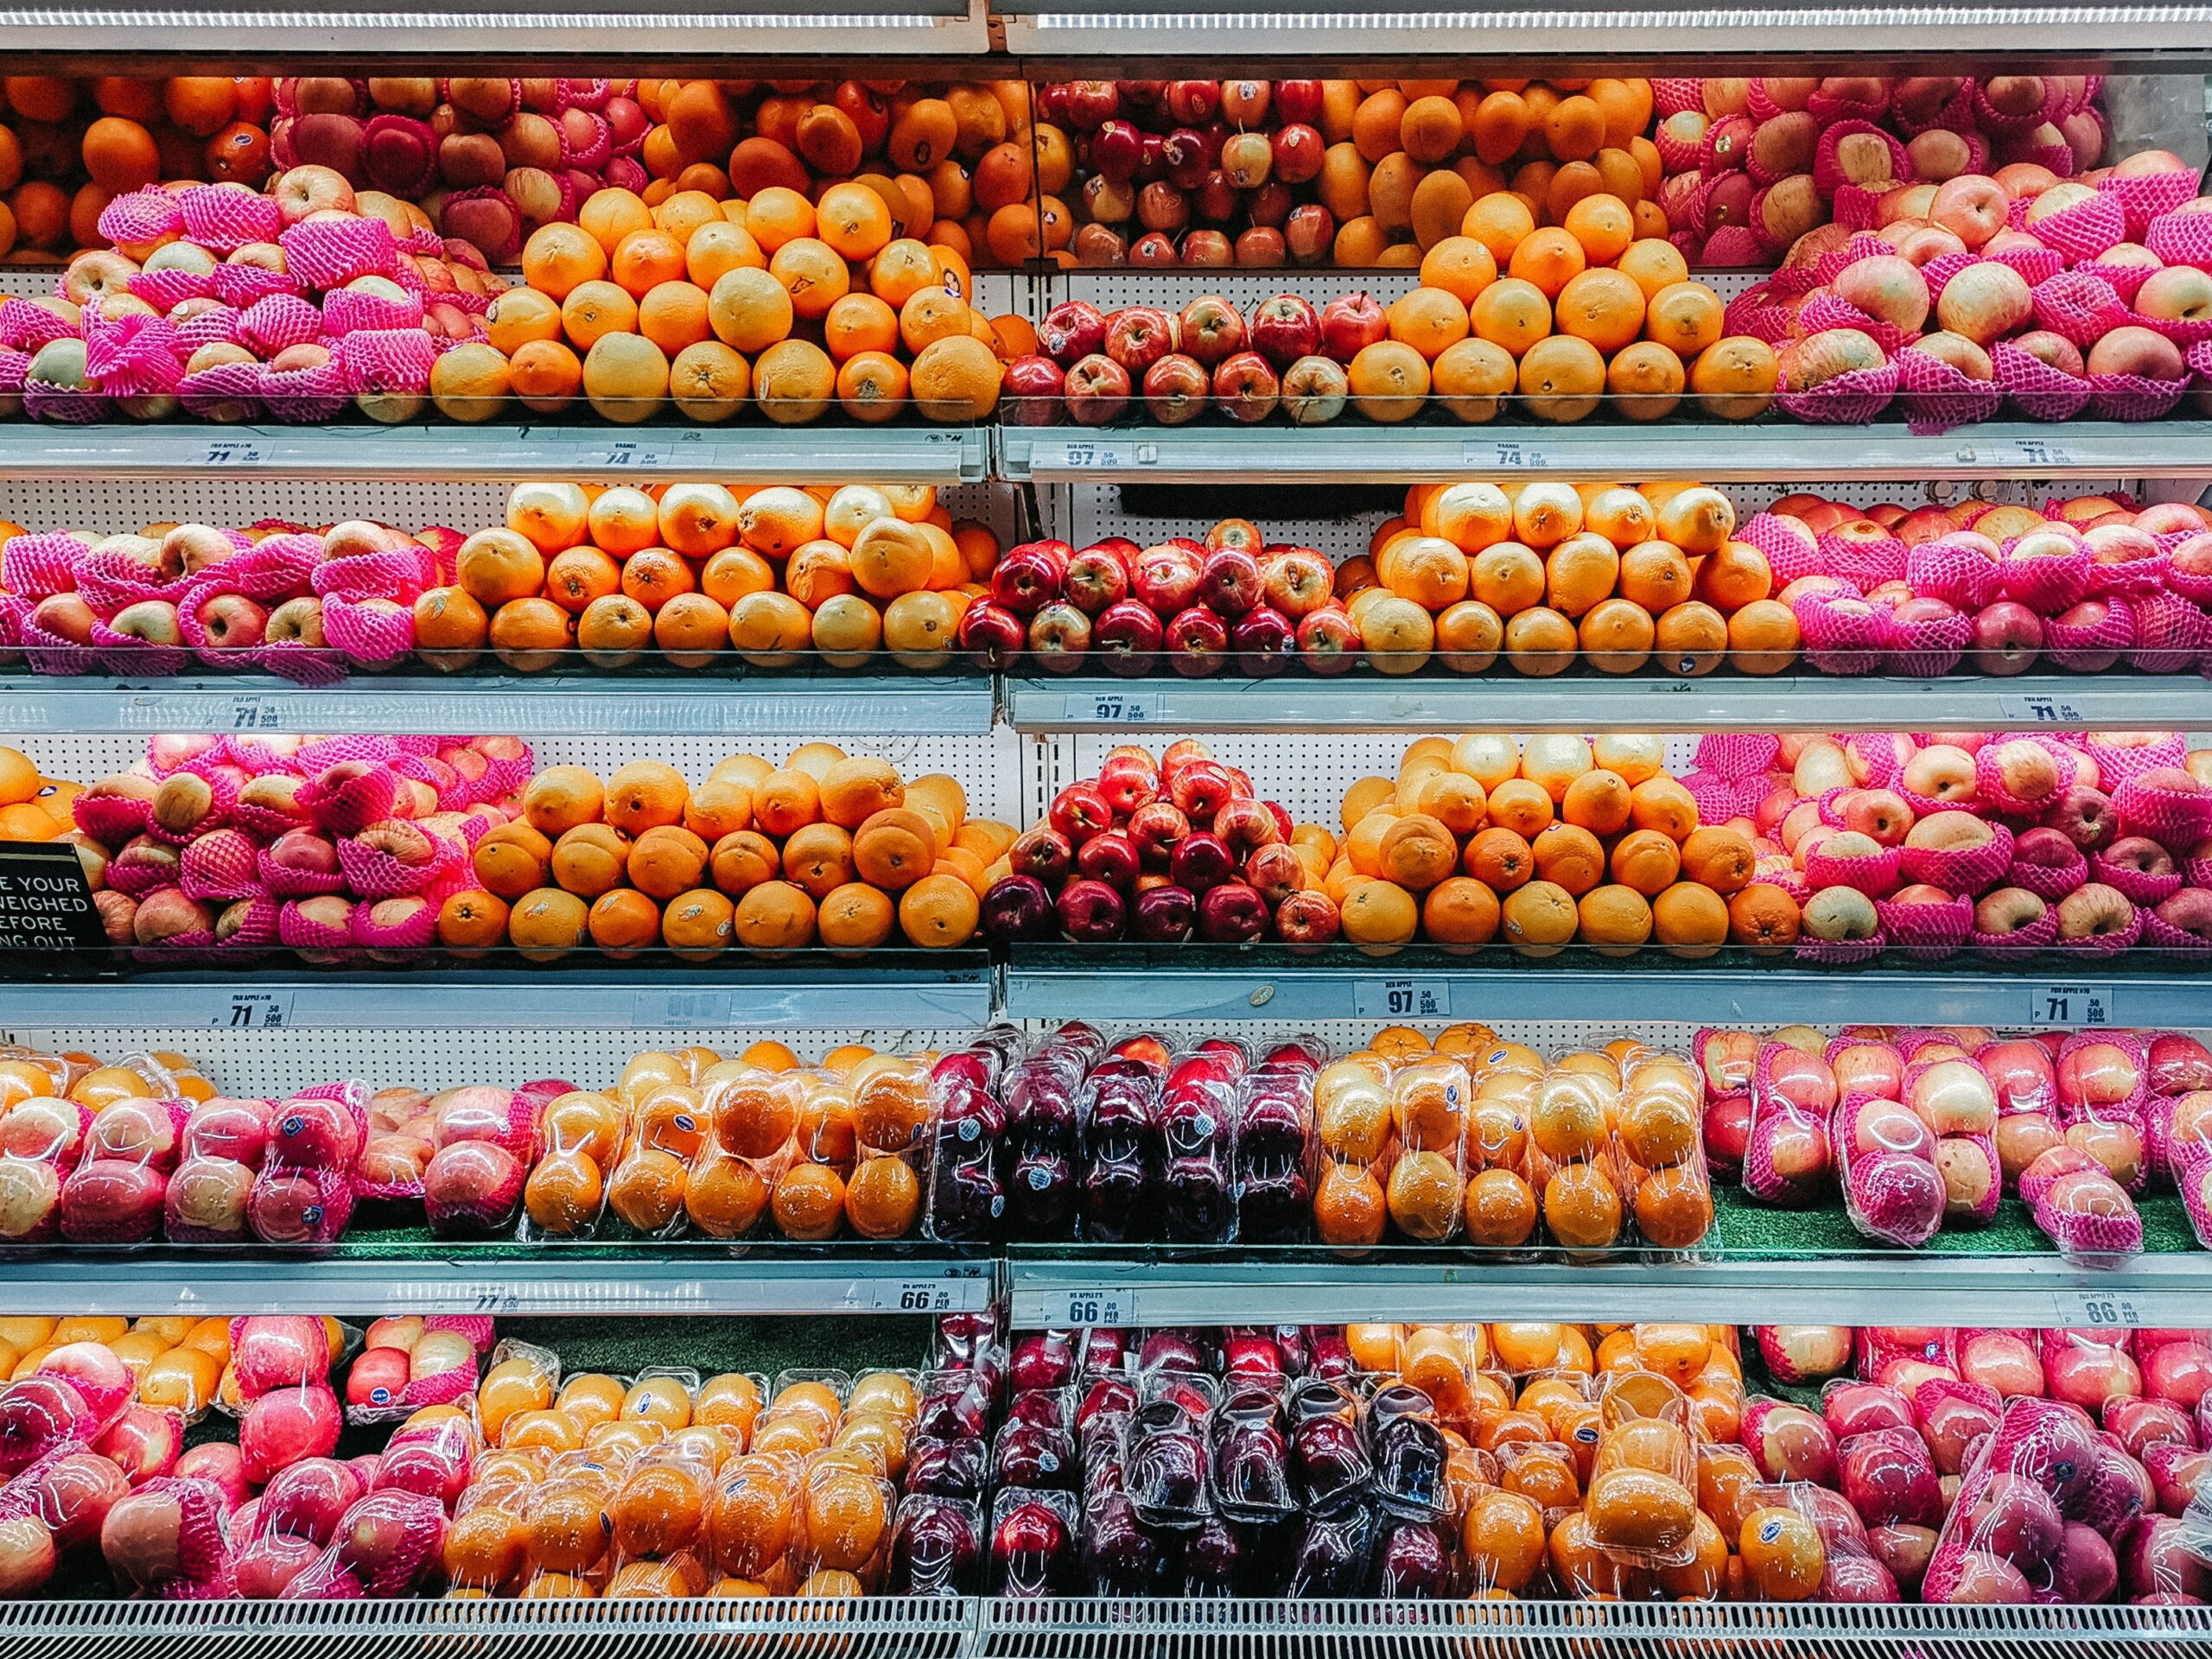 超市、賣場的商空店面設計，把水果類放在同一區，同時顧及美觀性和實用性